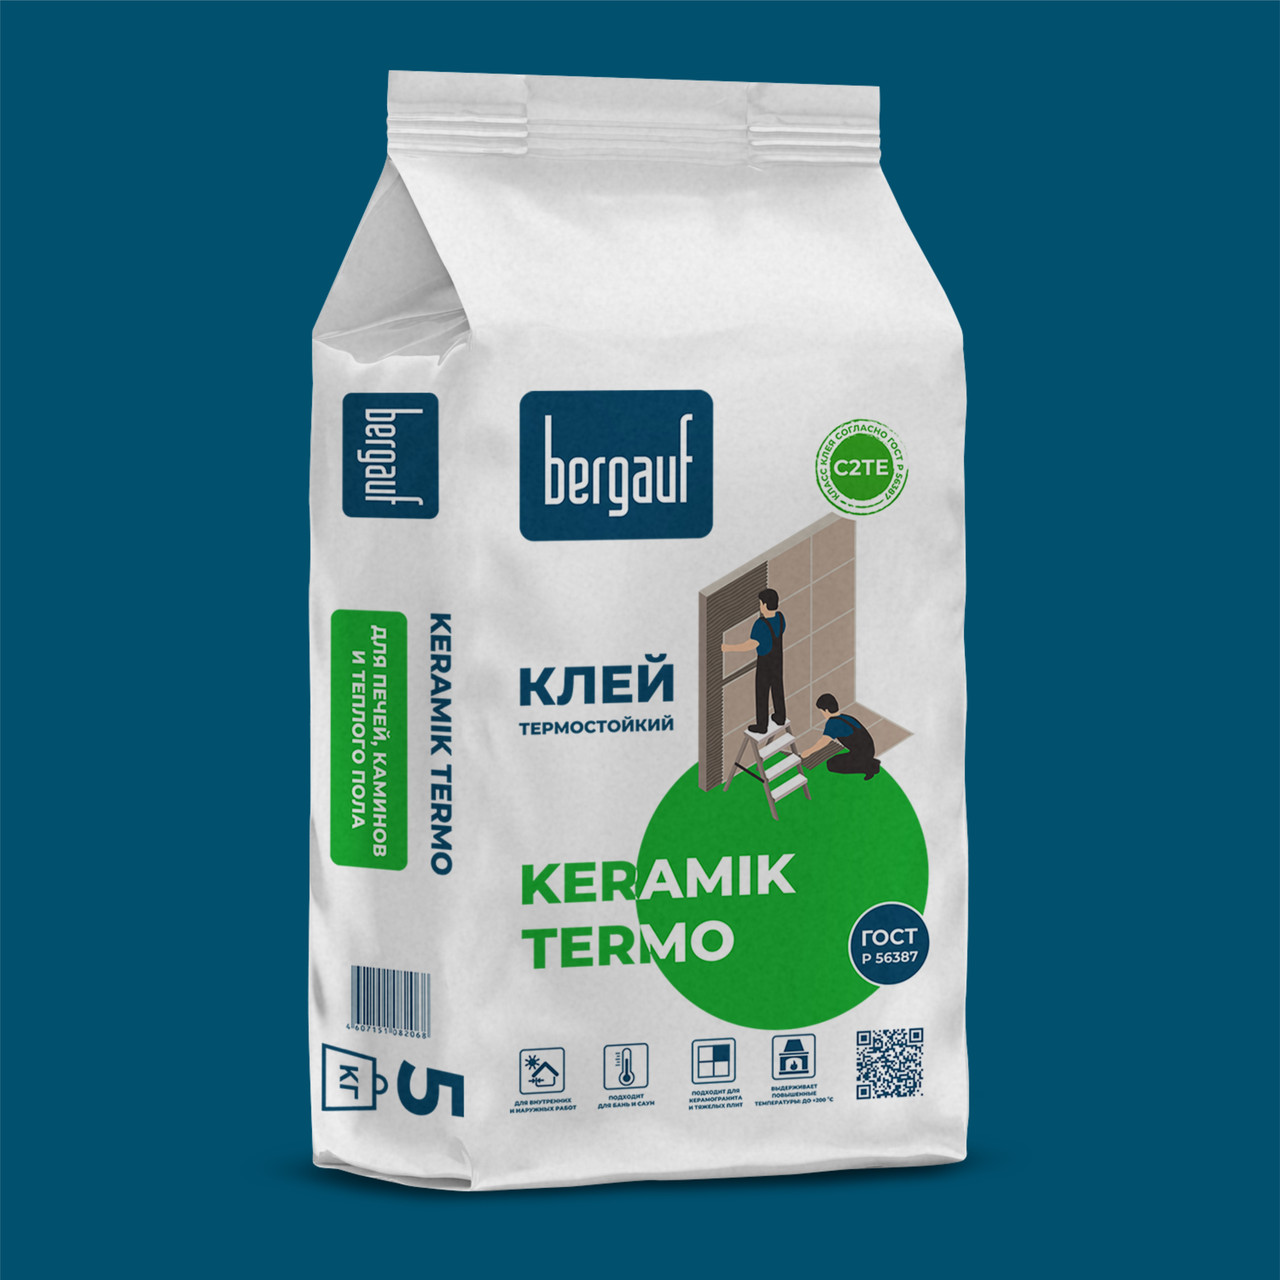 Термостойкий клей KERAMIK TERMO Bergauf 5 кг